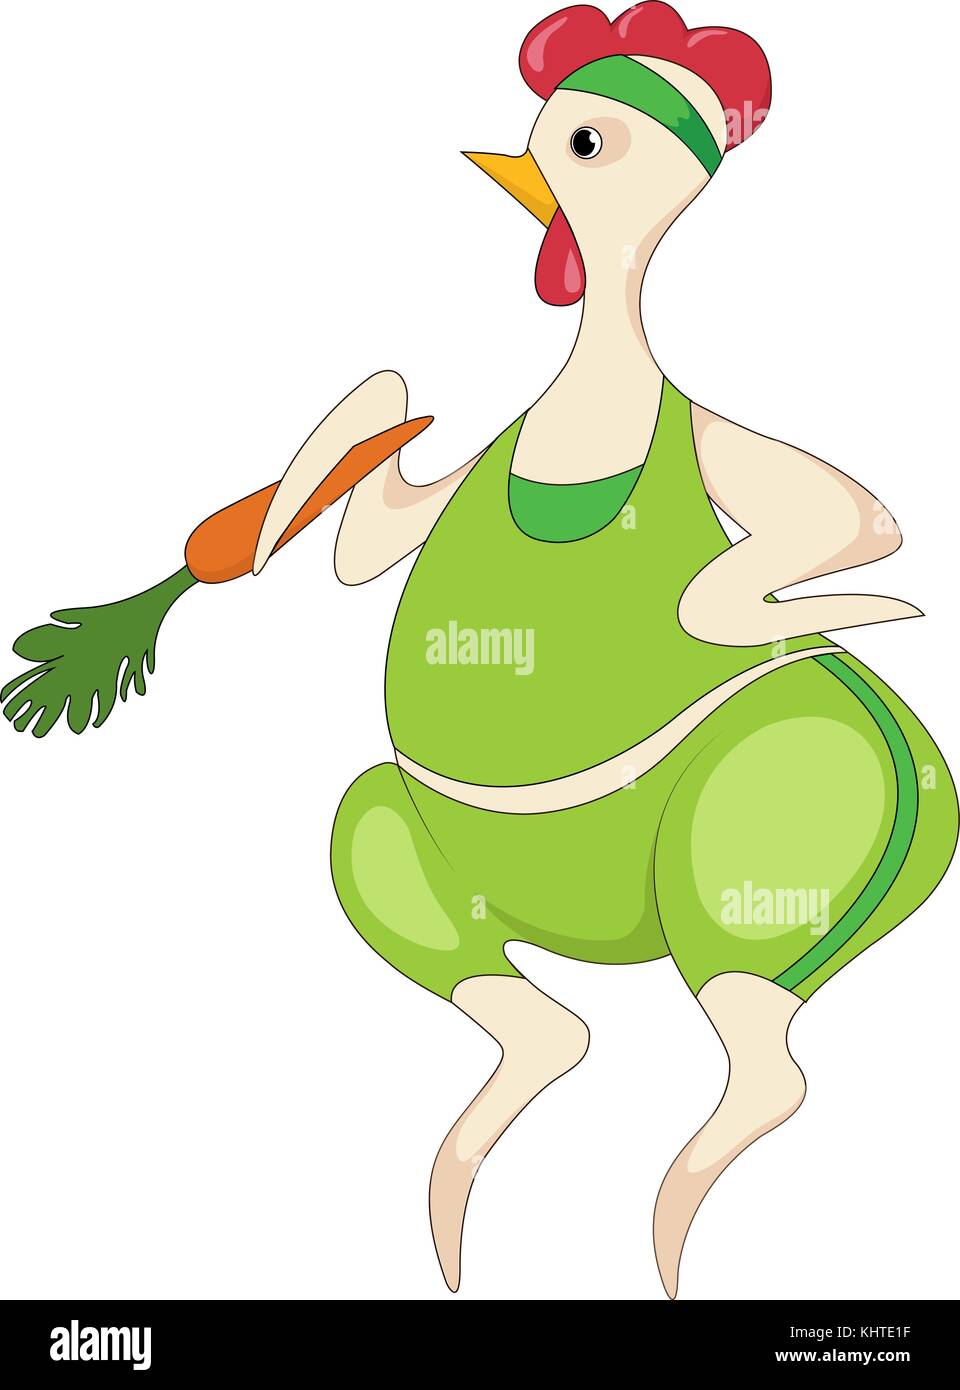 Eine lustige Henne in einem Workout Outfit mit einer Karotte, ein Cartoon Charakter. einen aktiven und gesunden Lebensstil. Stock Vektor